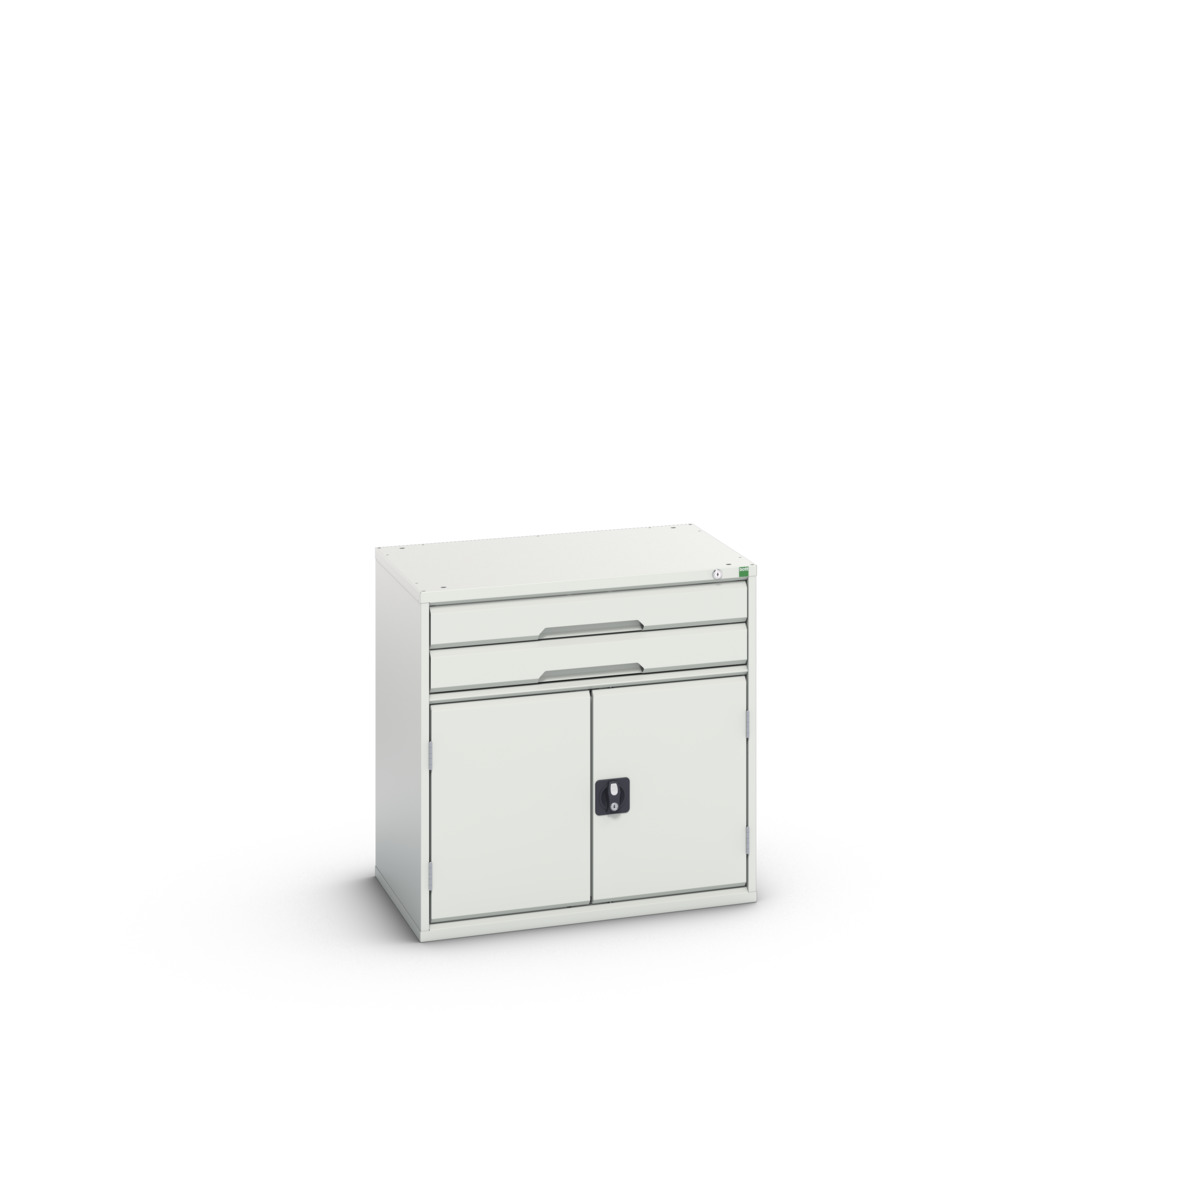 16925416.16 - verso drawer-door cabinet